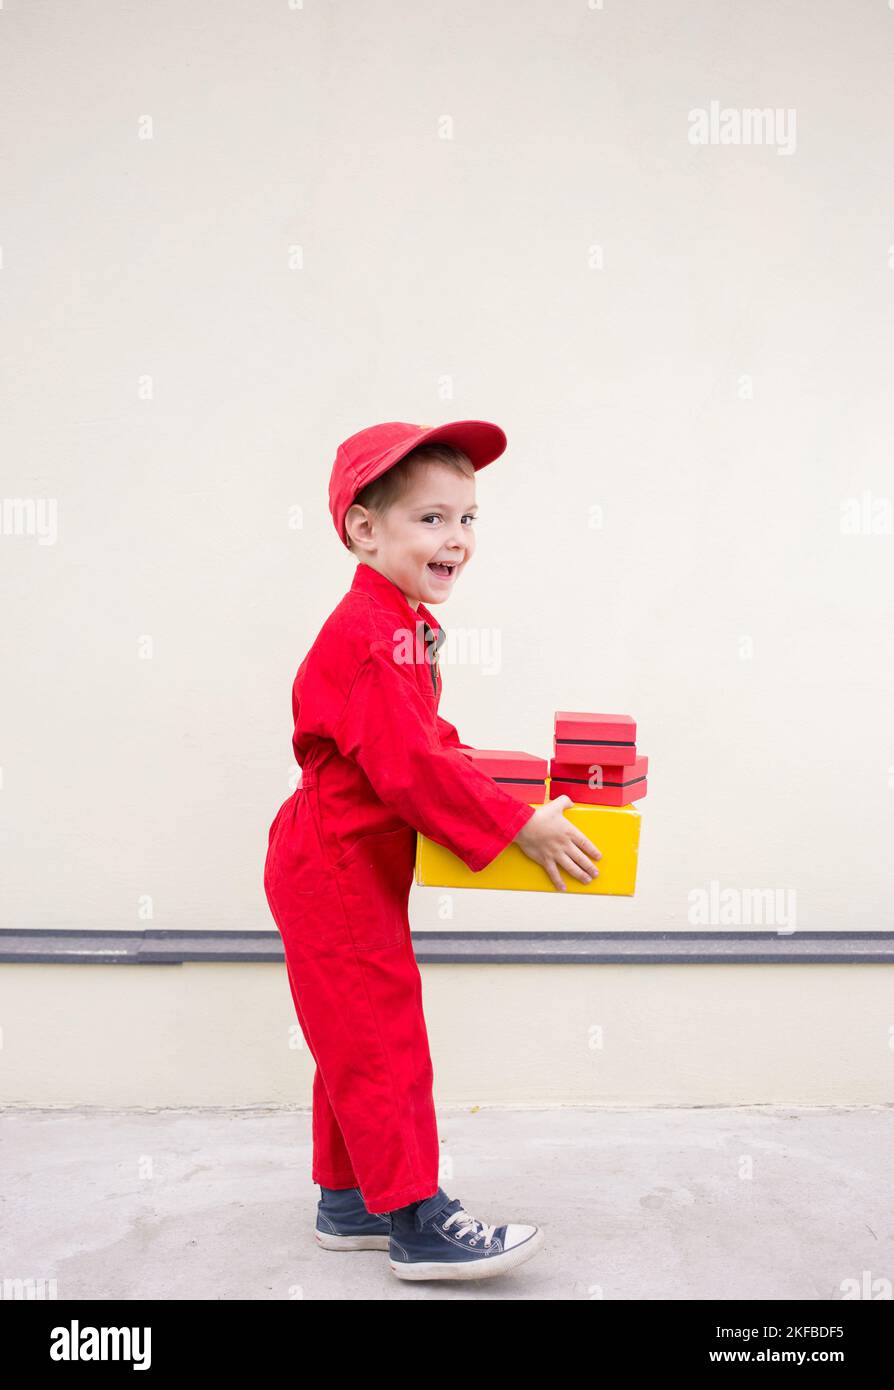 Fröhlicher positiver Junge 3-4 Jahre alt in einer roten Uniform und Mütze mit einem Karton in den Händen. express Lieferung von Glück. Positives Feedback. Spc Stockfoto